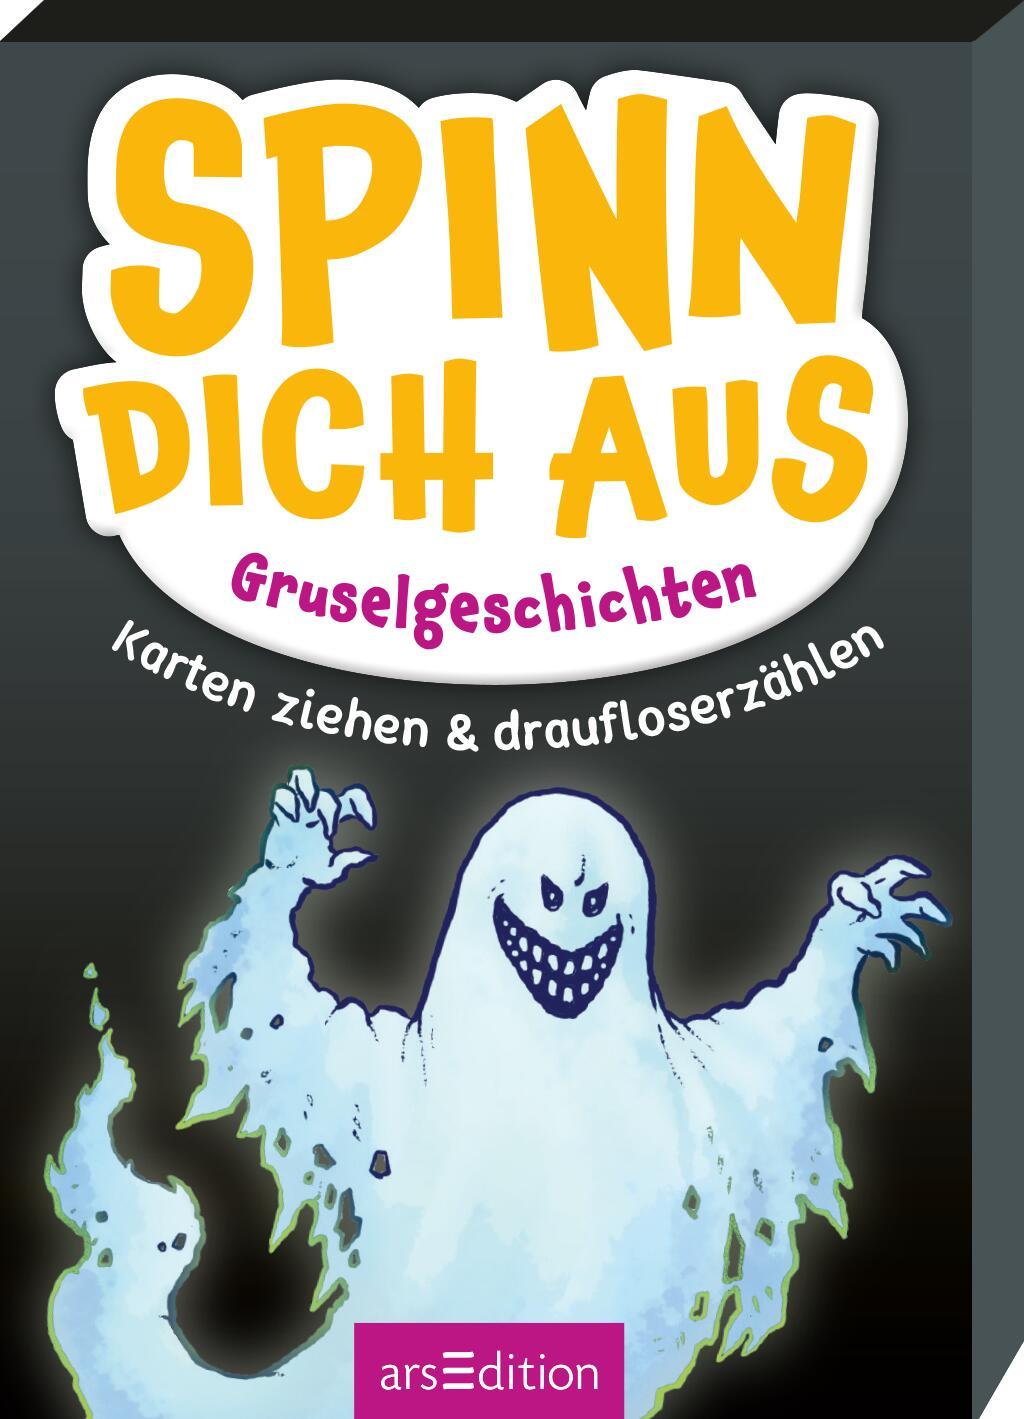 Hra/Hračka Spinn dich aus - Gruselgeschichten Jens Schumacher